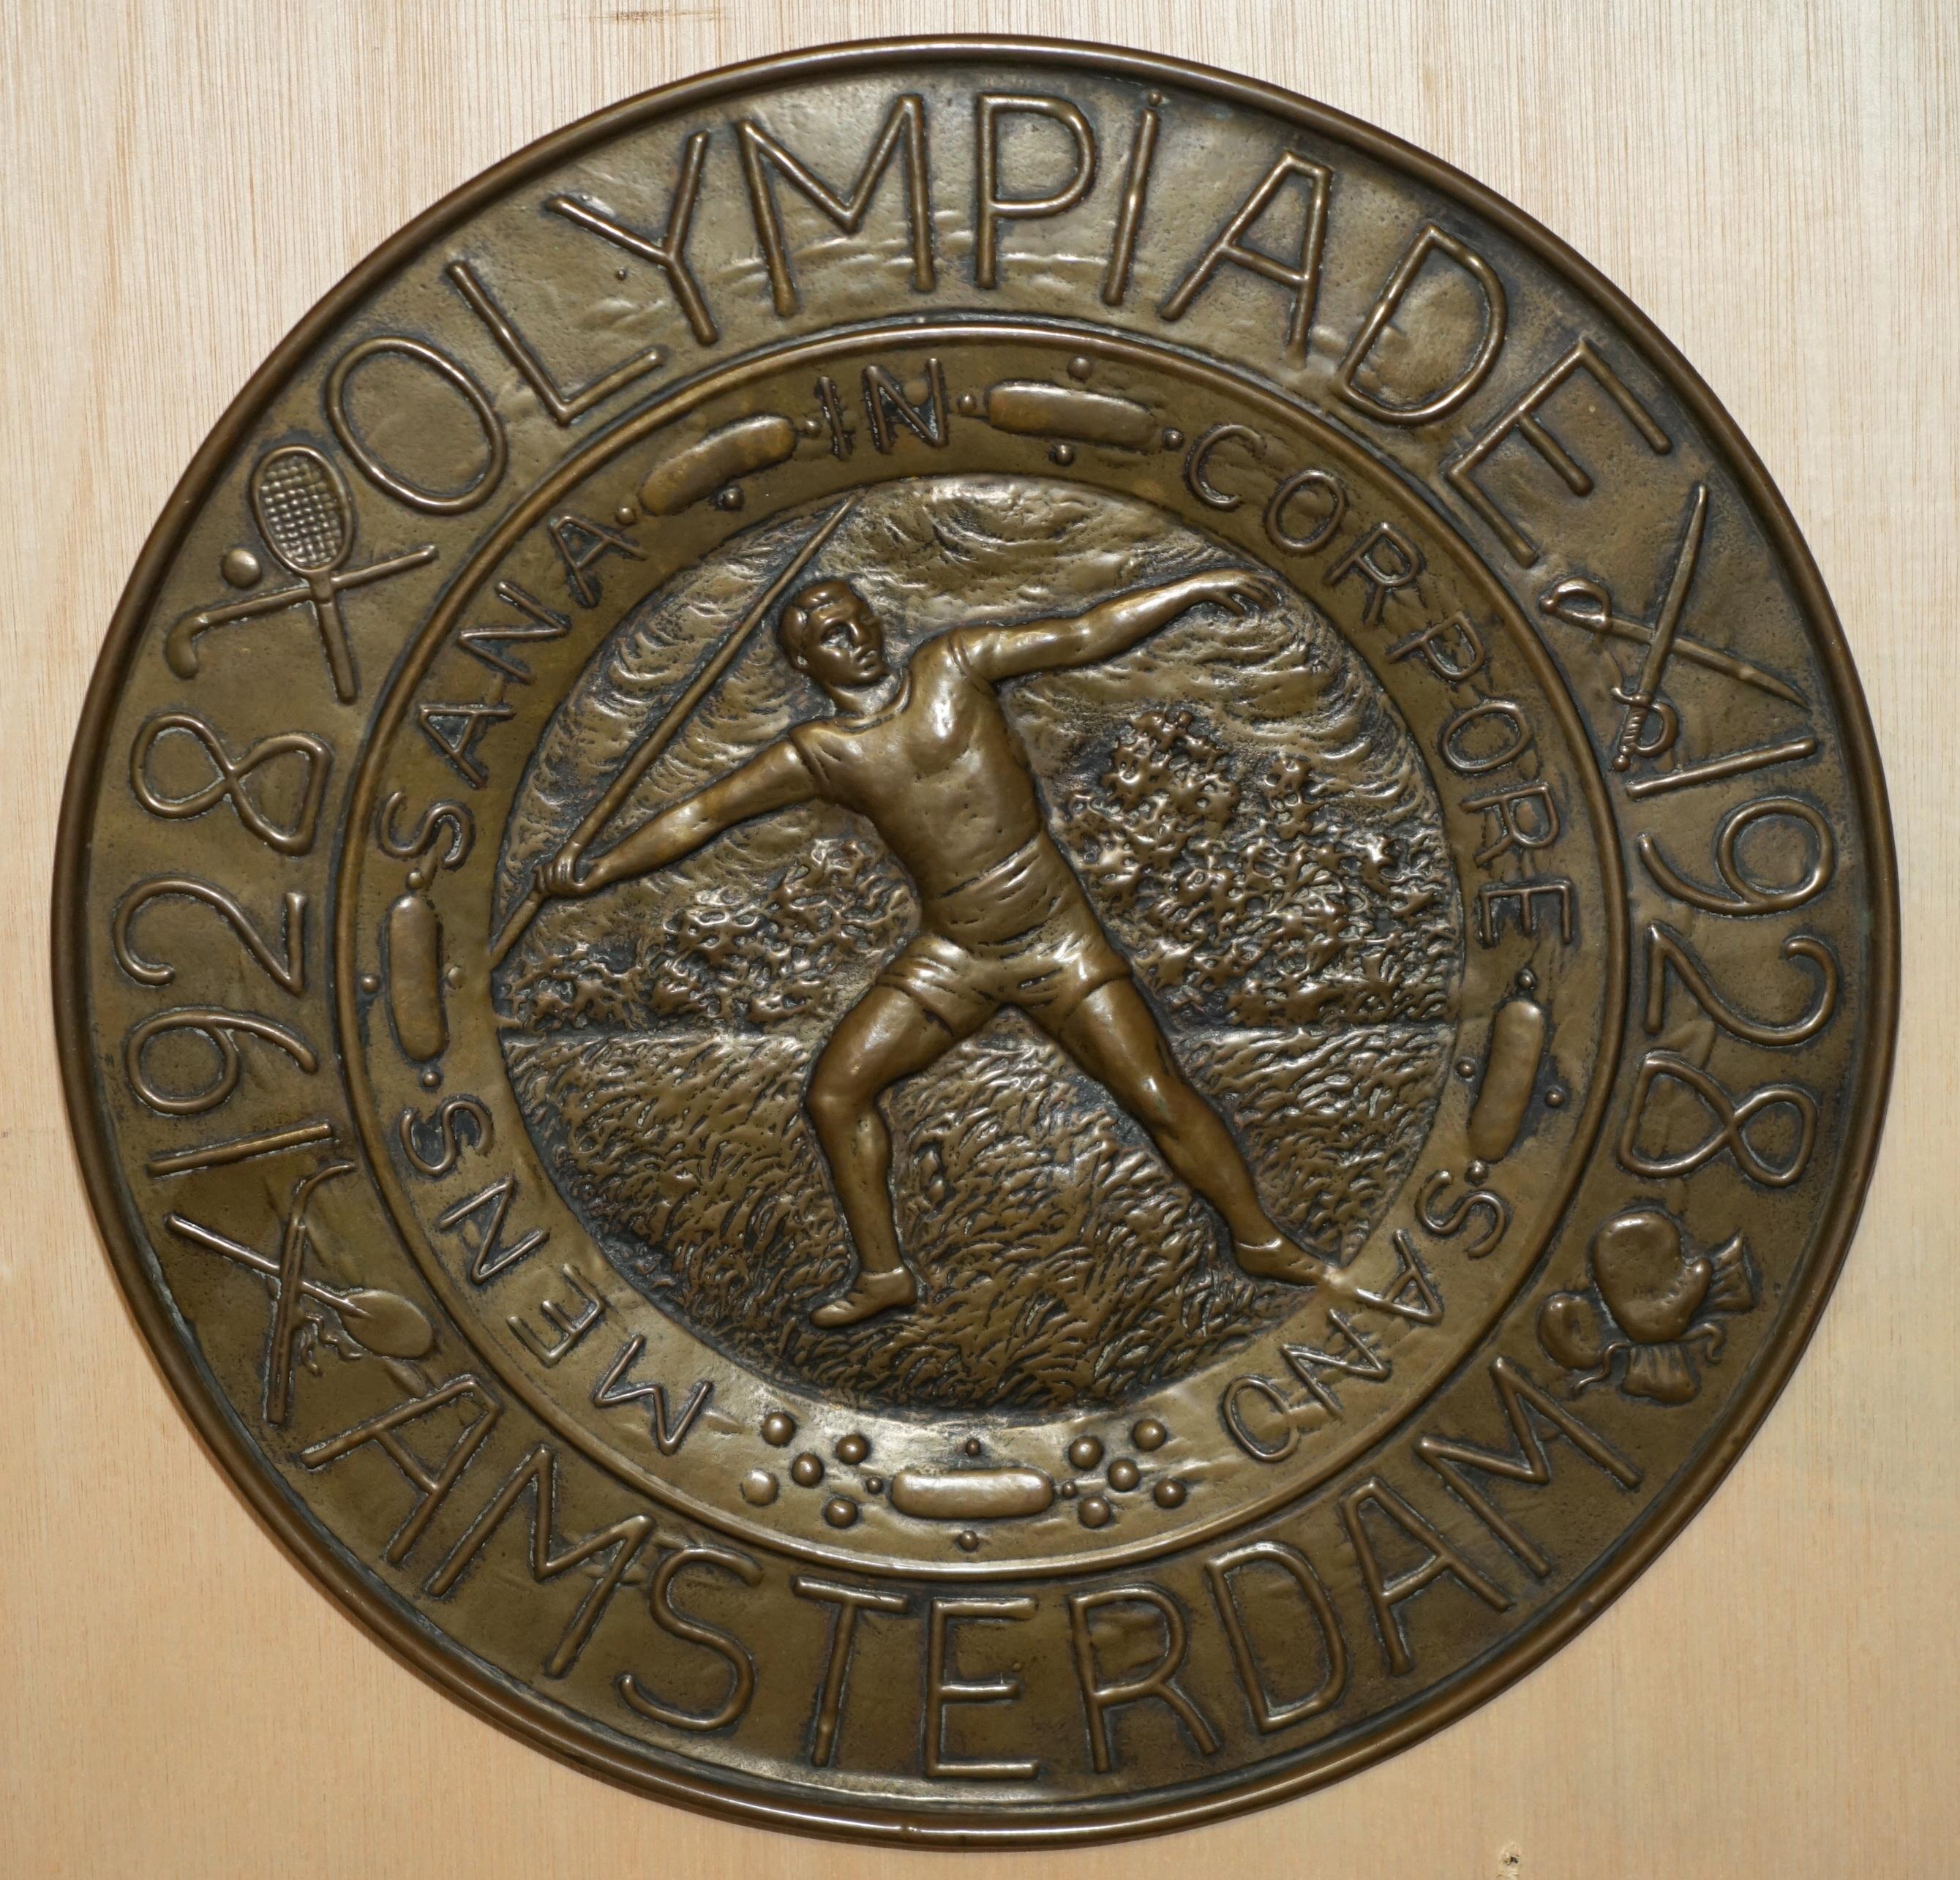 Royal House Antiques freut sich, dieses schöne Sammlerstück aus dem Jahr 1928, die Olympischen Spiele in Amsterdam, zum Verkauf anbieten zu können: eine Wandtafel aus Messing mit Repoussierung.

Ein schönes Stück olympischer Erinnerungsstücke, das